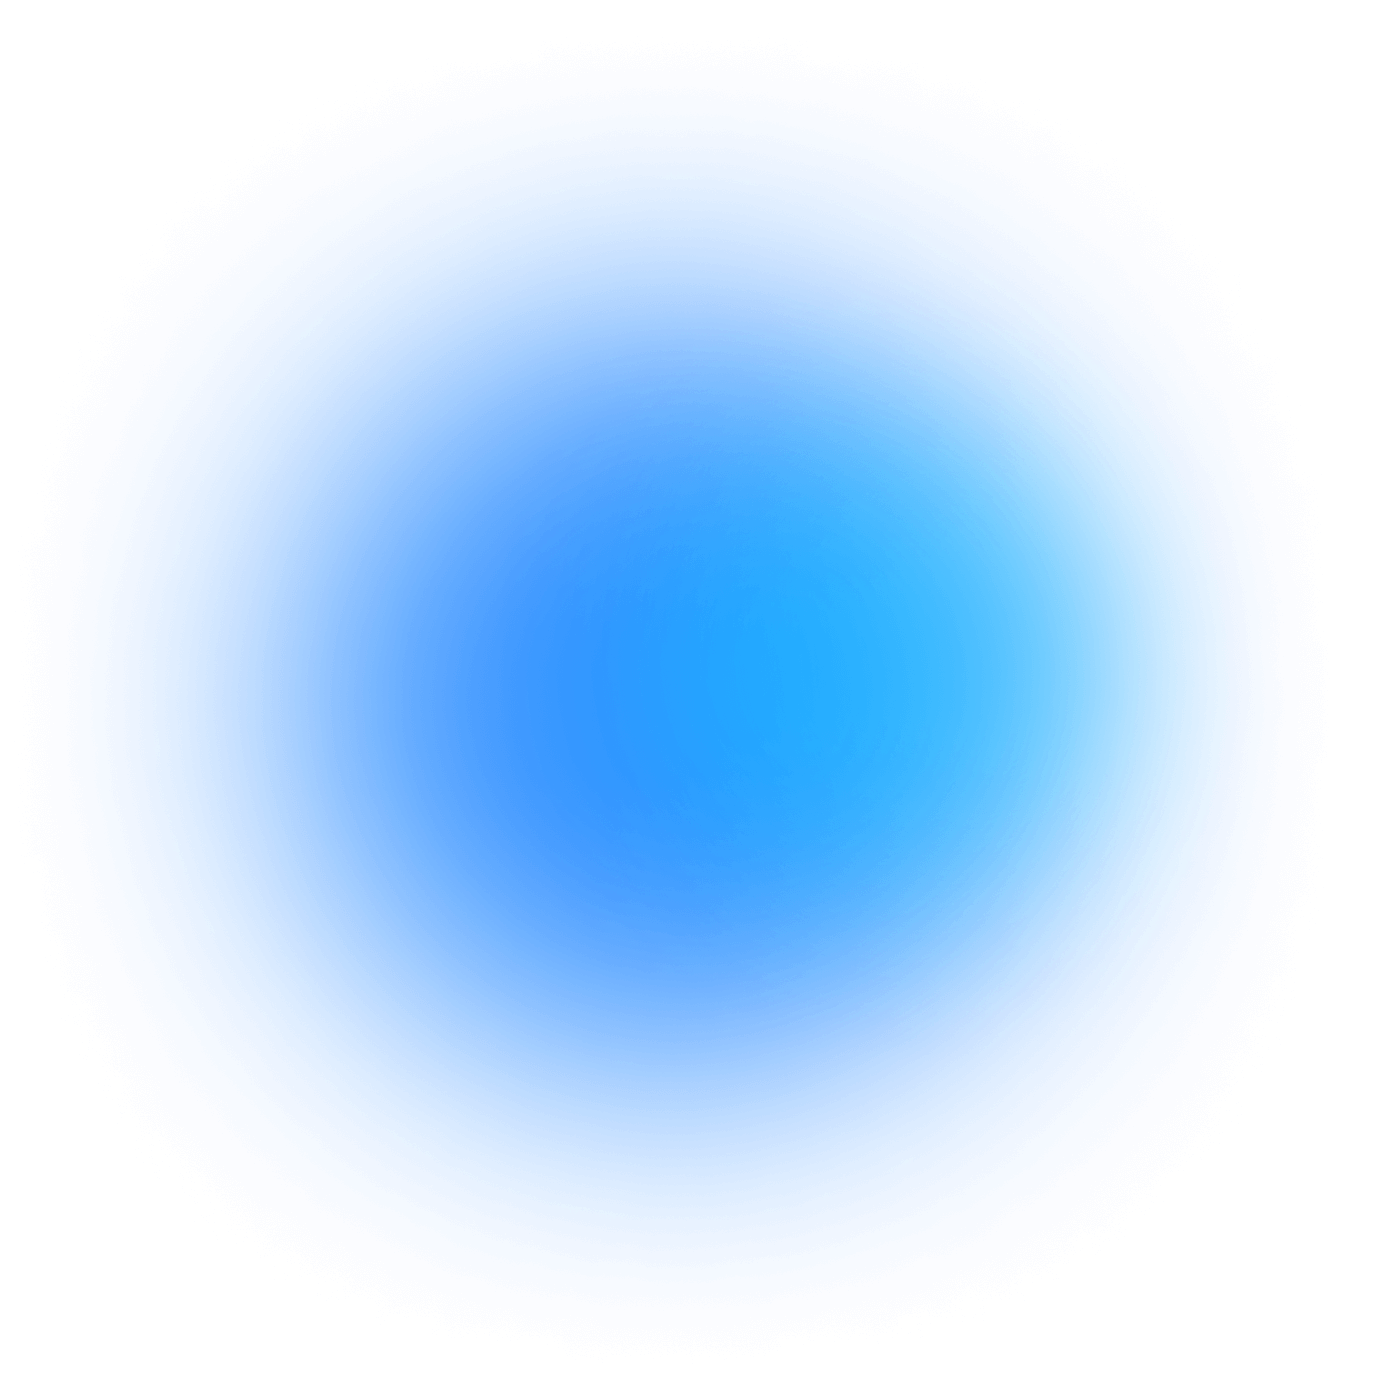 Fond bleu effet galaxy avec un filtre rouge OpenMyDiv par dessus